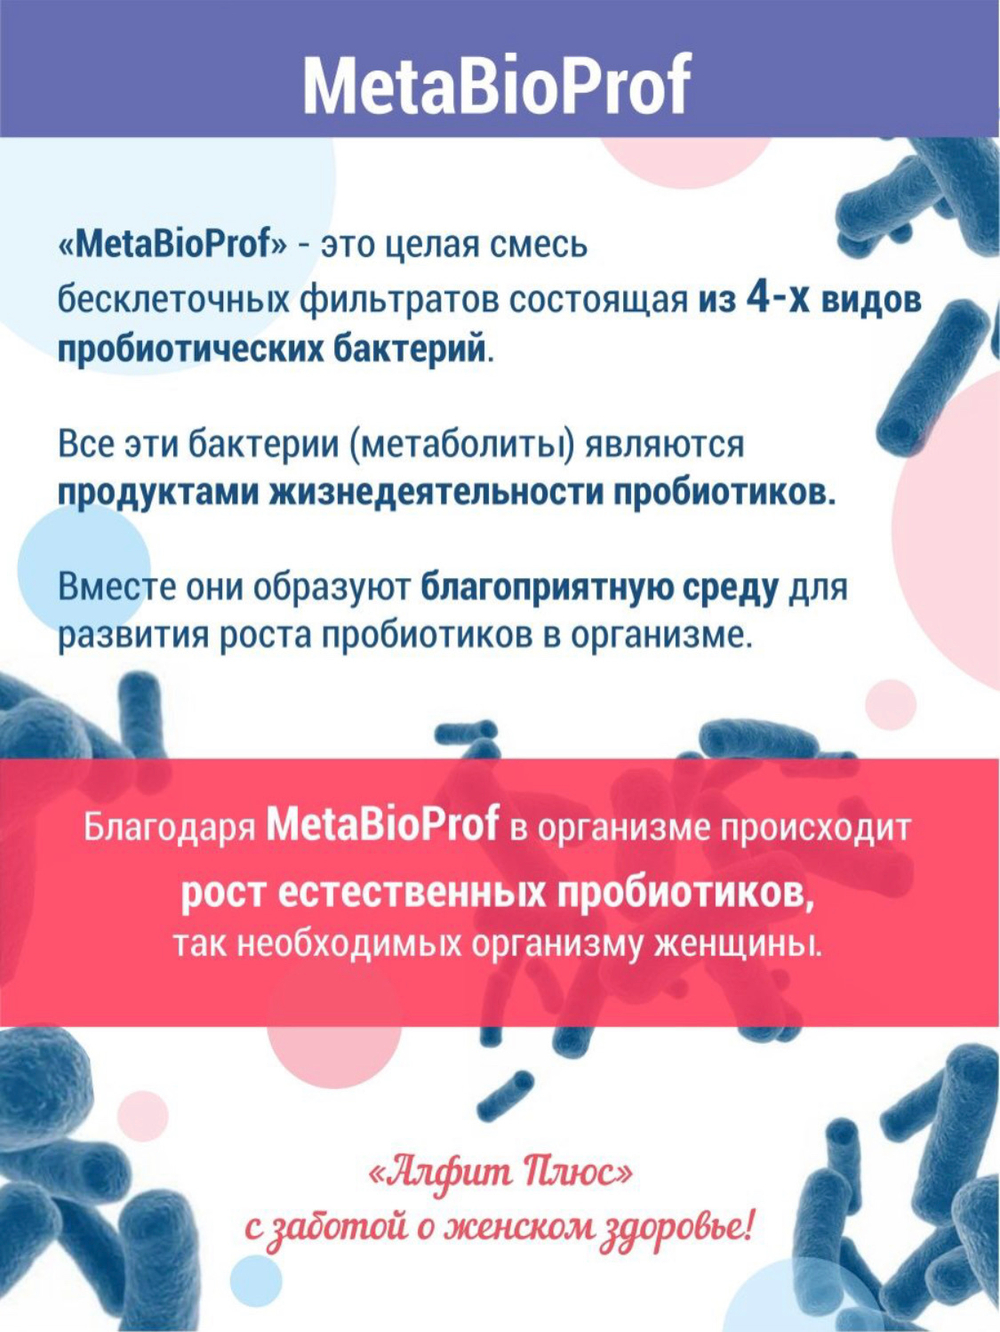 ФЛОРАЖЕН для женской микрофлоры №30, Фитол-18 с метаболитами пробиотиков MetaBioProf